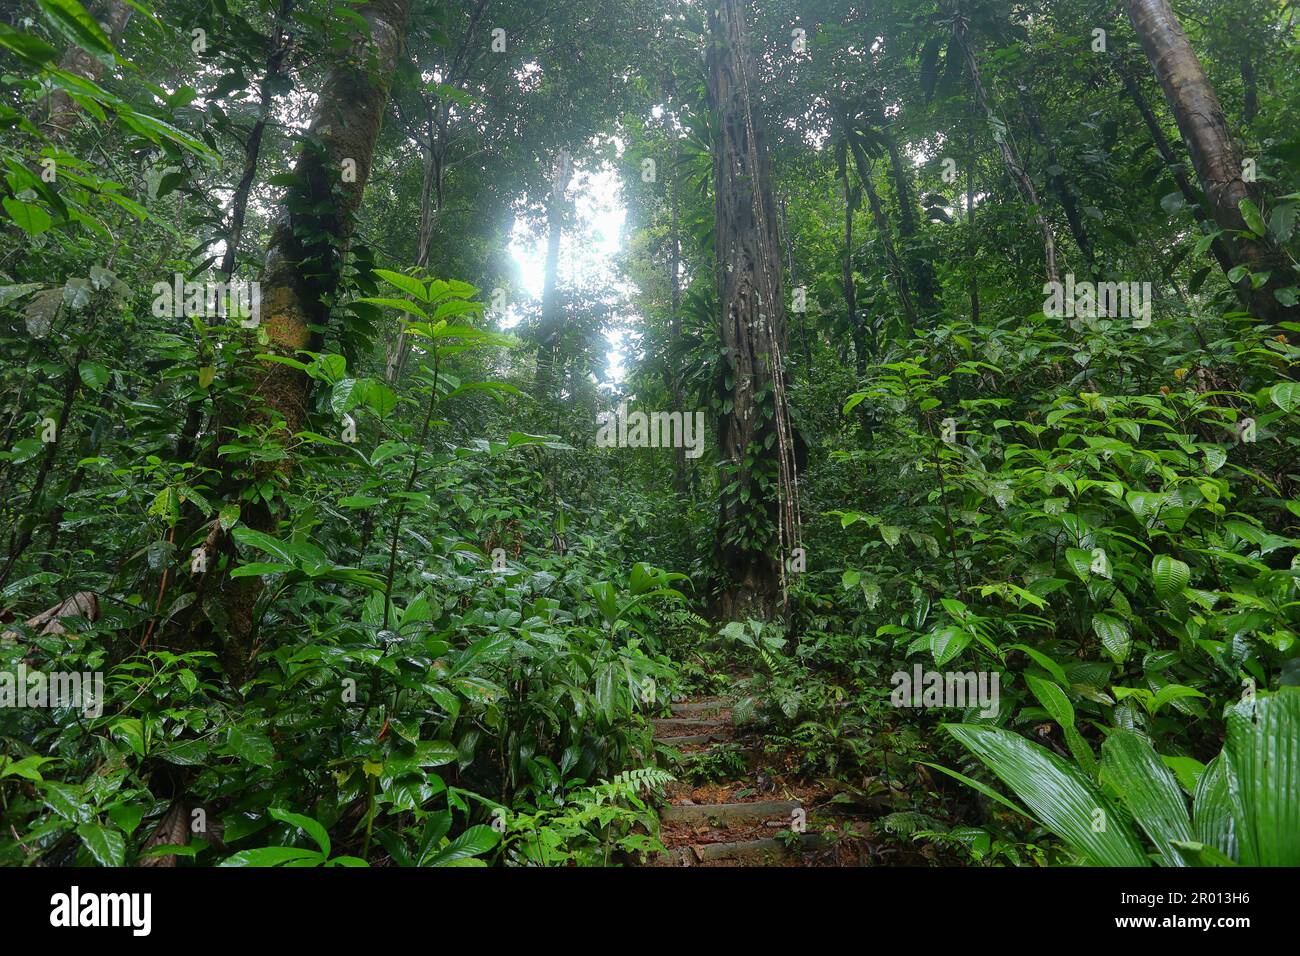 Das Innere des Amazonas-Regenwaldes in Französisch-Guayana. Primärer Regenwald, Amazonien. Brasilianischer Dschungel, Bäume im Regenwald. Stockfoto